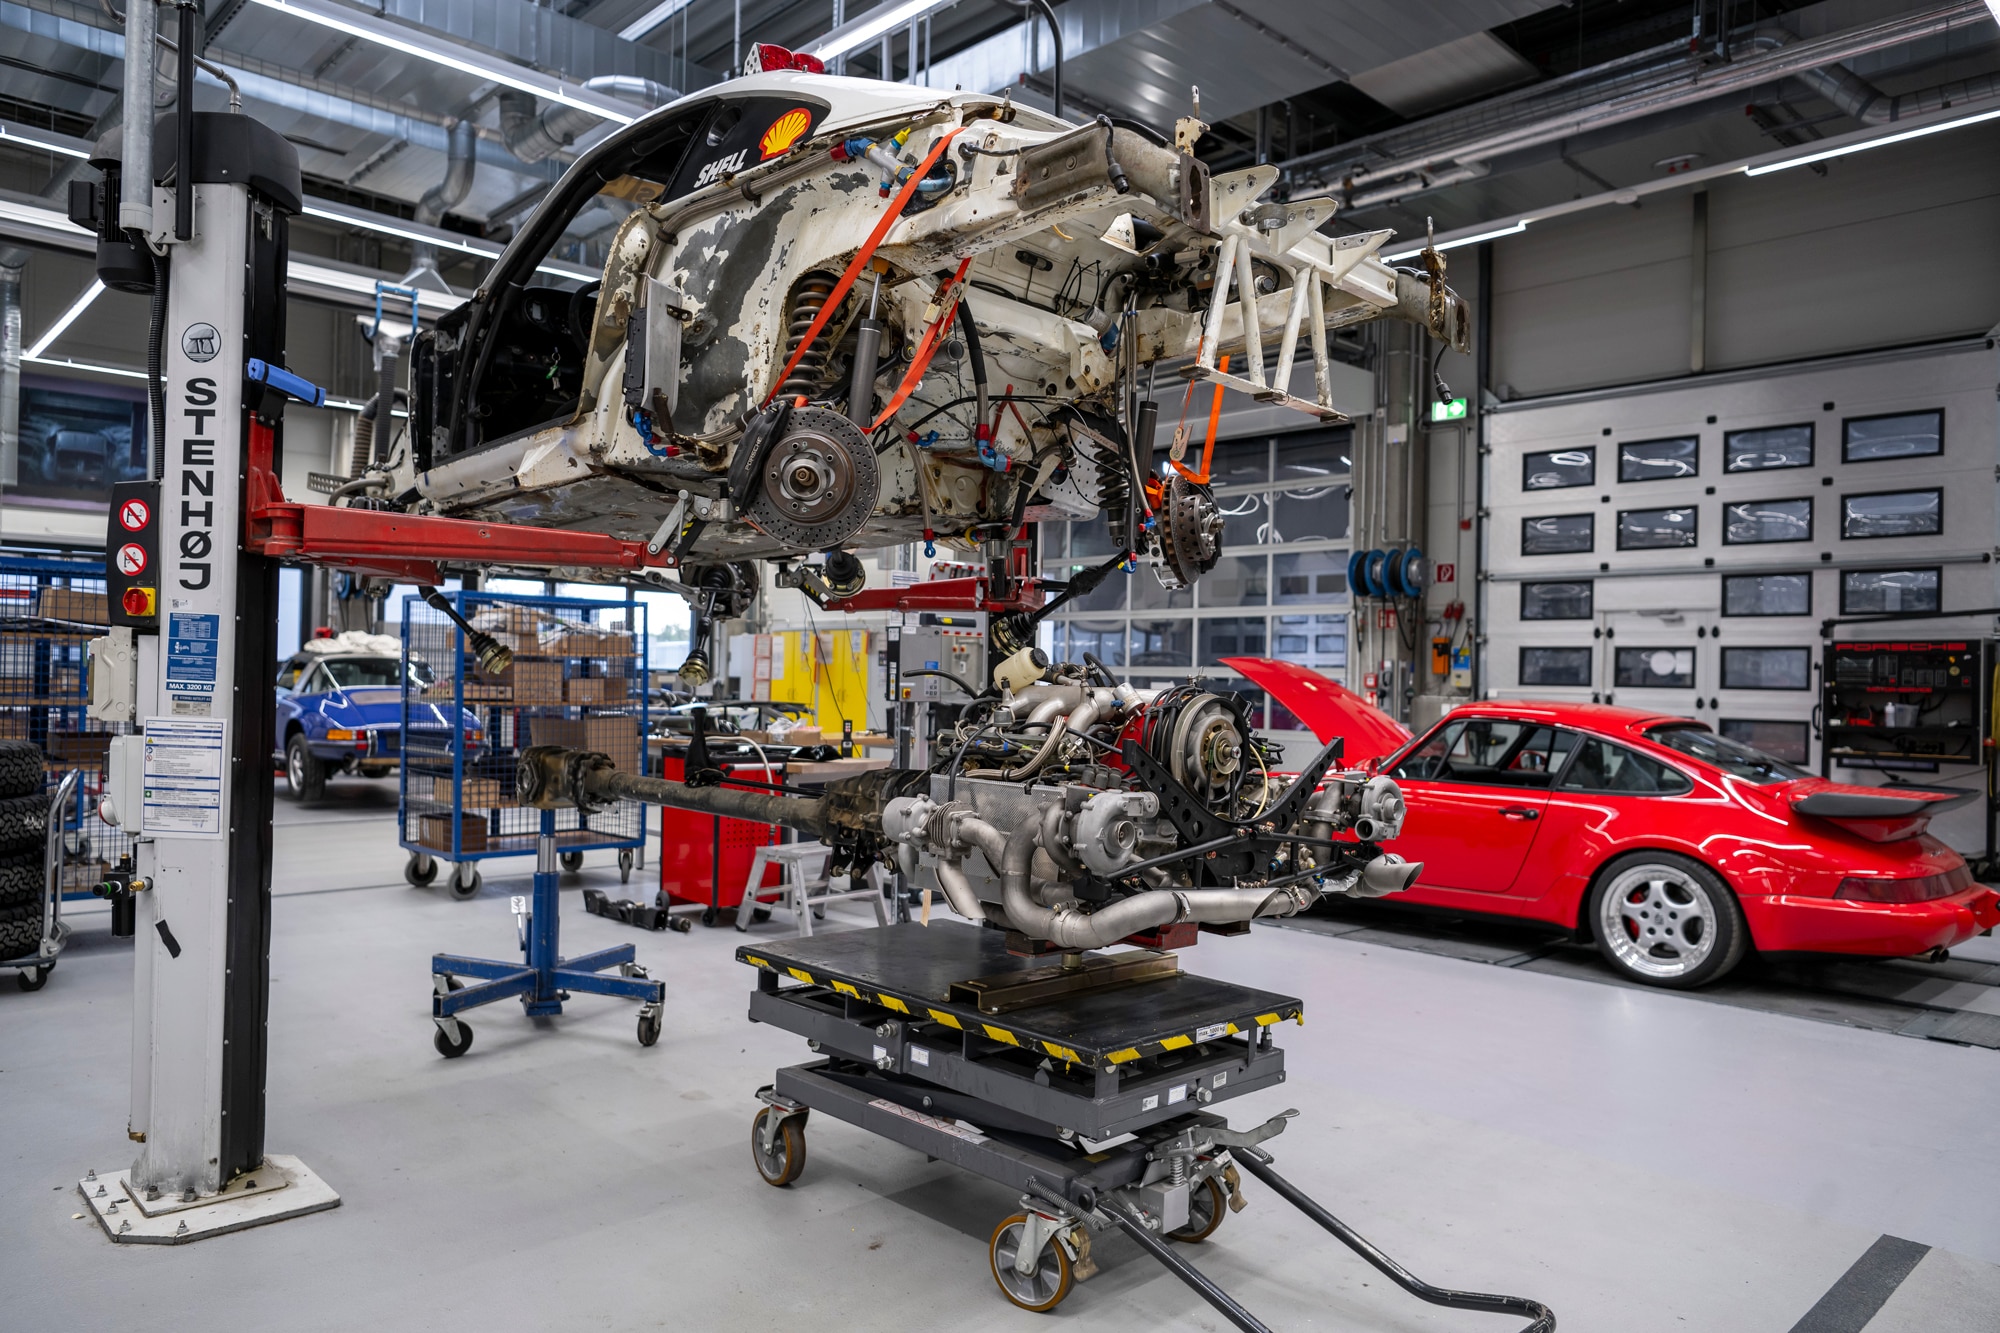 Engine being reinstalled in the 959 Paris-Dakar next to a red Porsche inside the Porsche Classic workshop